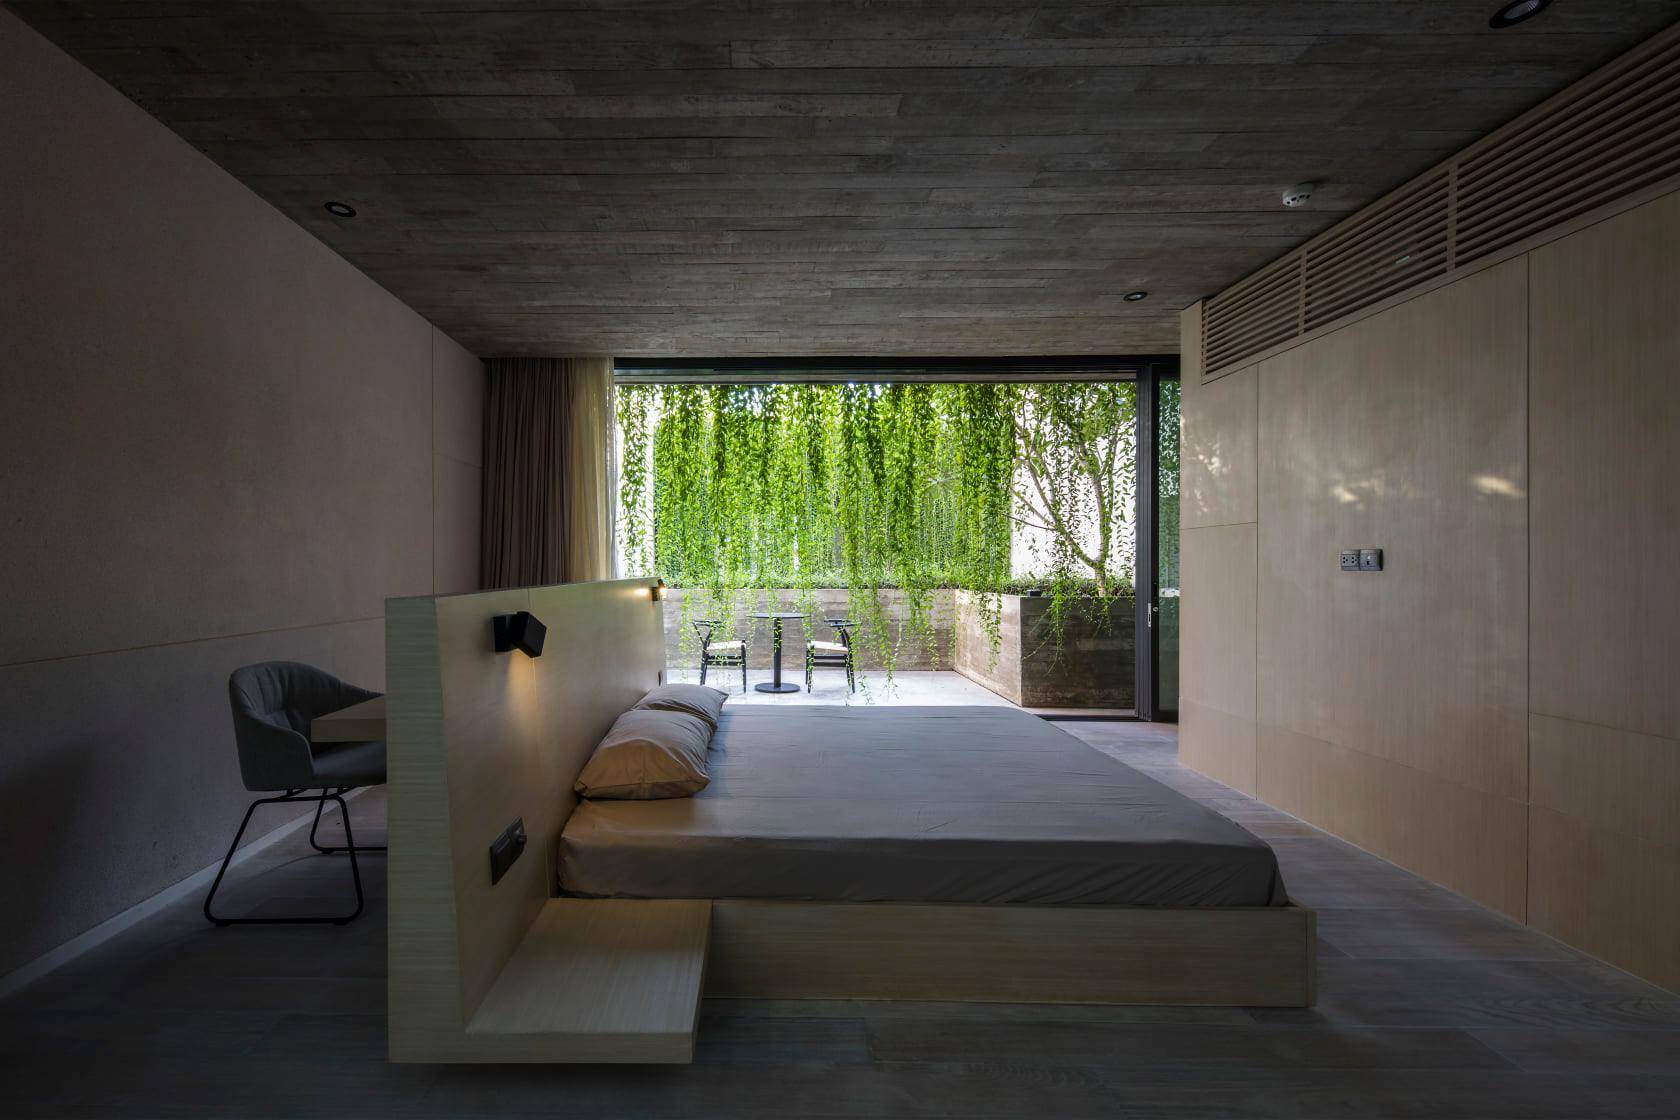 Phòng ngủ theo phong cách tối giản, không sử dụng nhiều đồ đạc mà tập trung vào việc kết nối với thiên nhiên